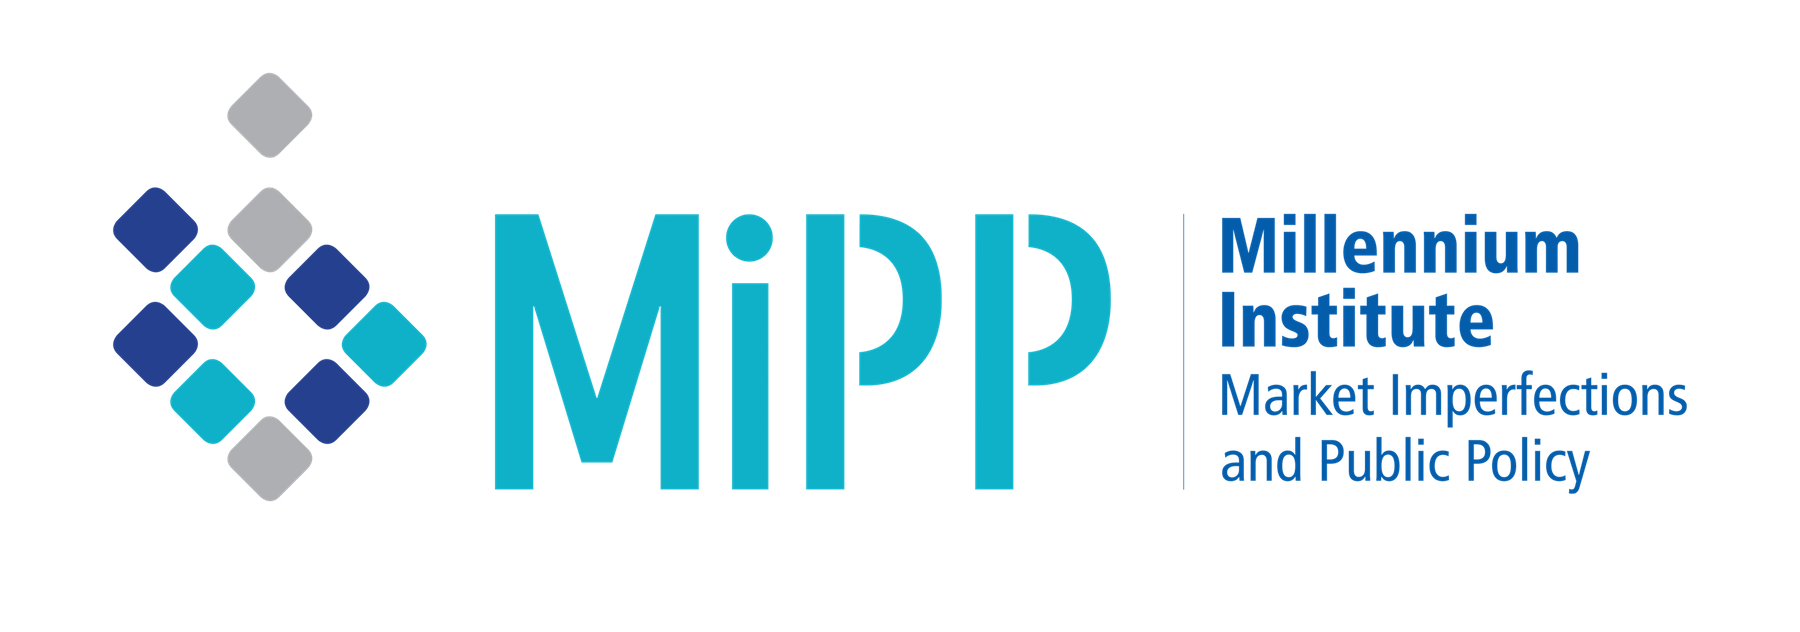 Consumer Scores and Price Discrimination – MIPP